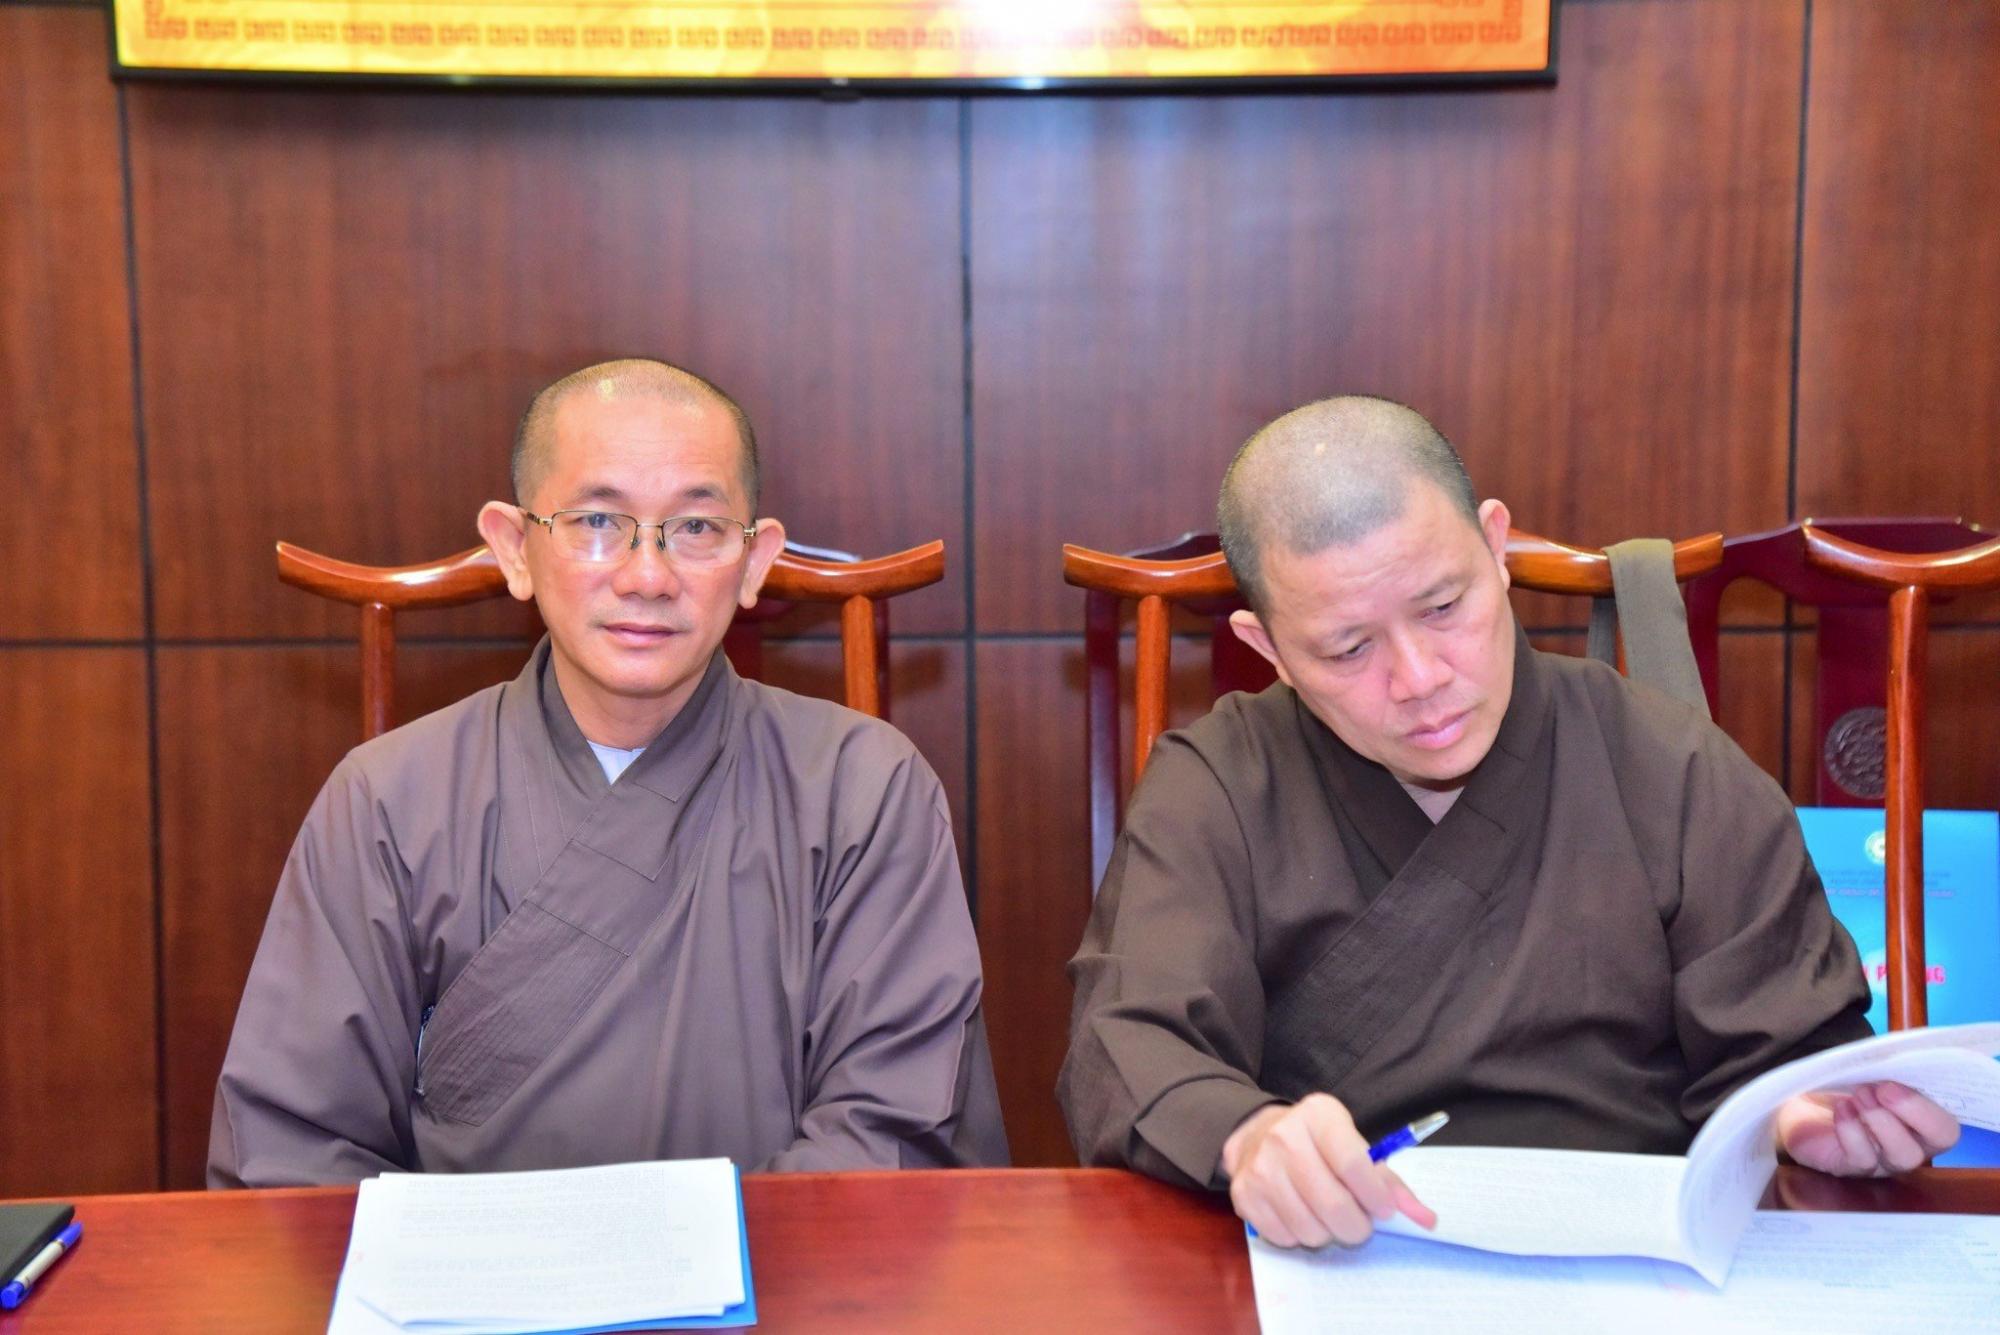 Sơ kết công tác Phật sự 06 tháng đầu năm 2023 của Ban Giáo dục Phật giáo TP.HCM 